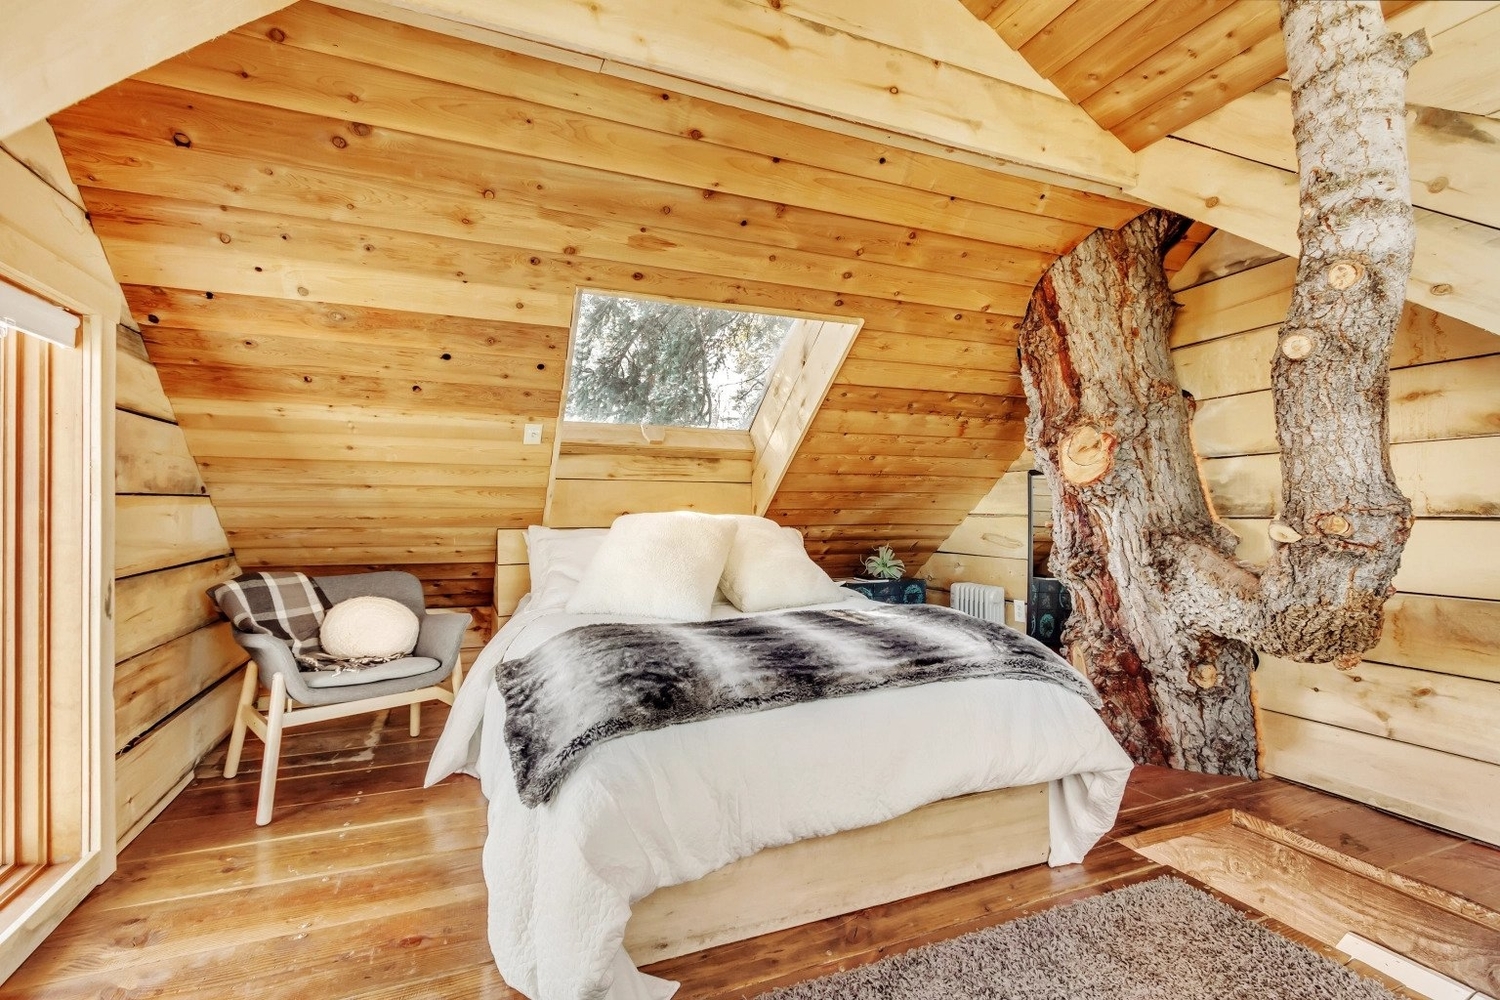 Most Loved Airbnb in Utah